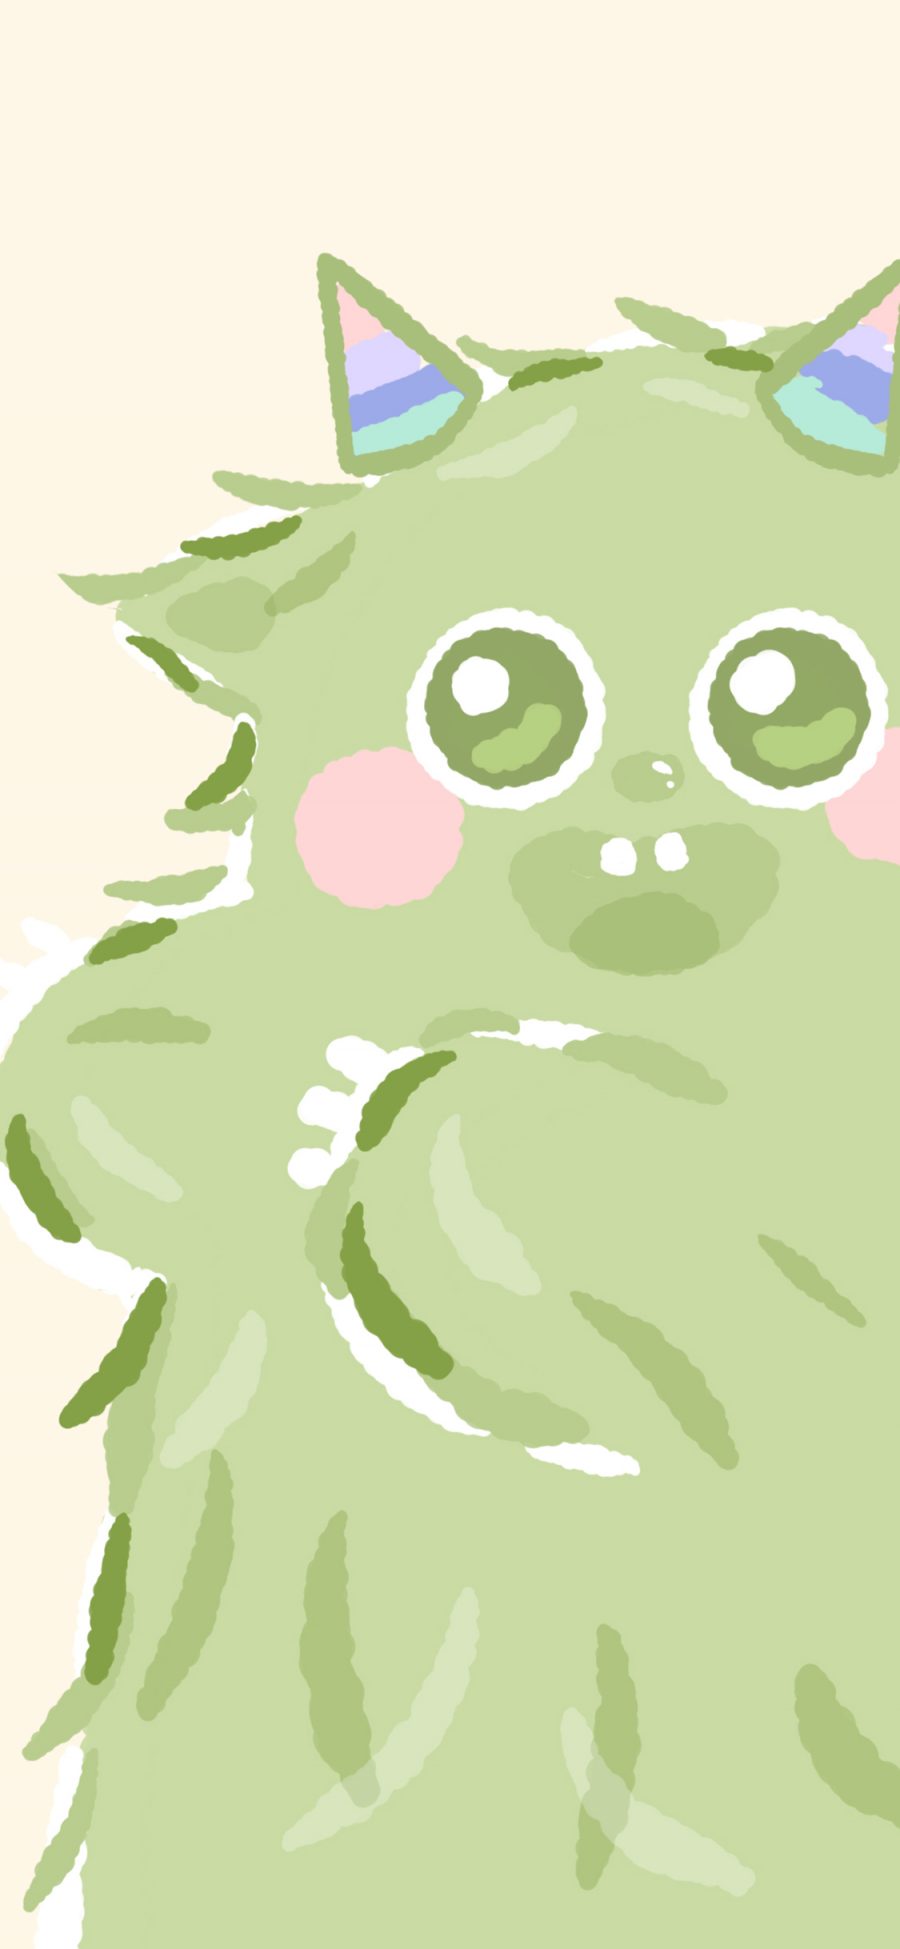 [2436×1125]小怪兽 可爱 萌 绿色 开心 苹果手机动漫壁纸图片